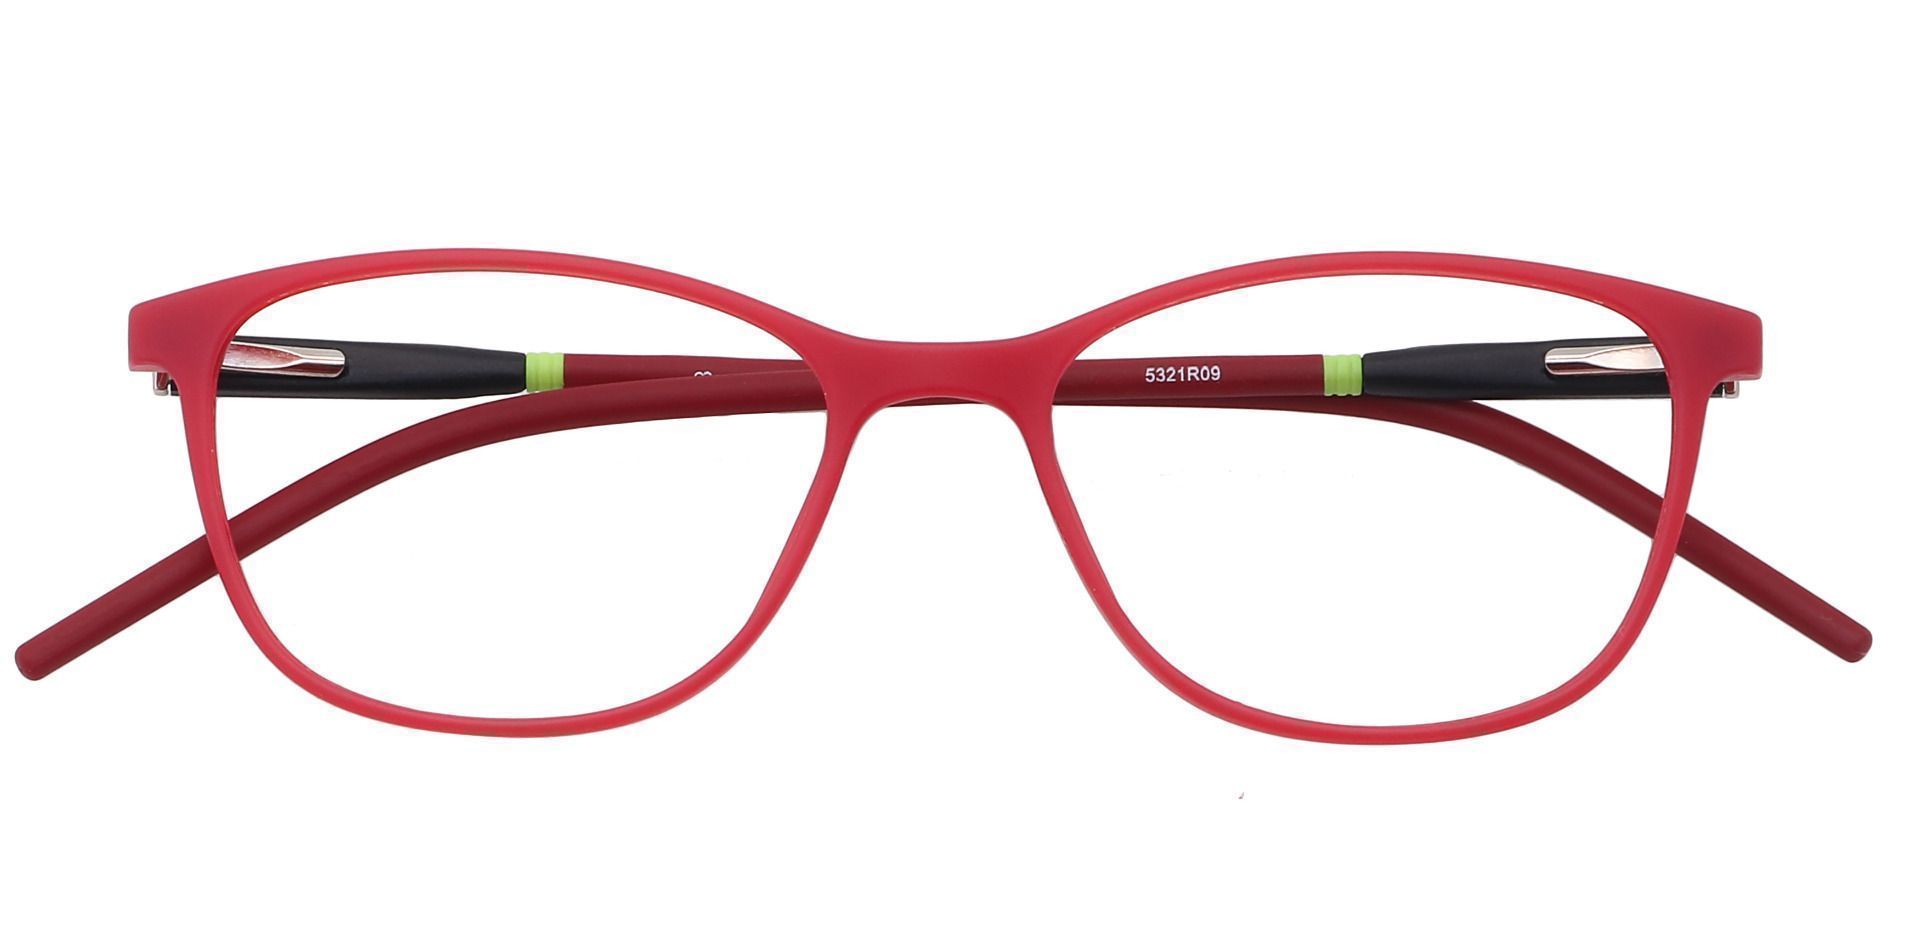 Hazel Square Progressive Glasses - Cherry Red/blk & Red Temple